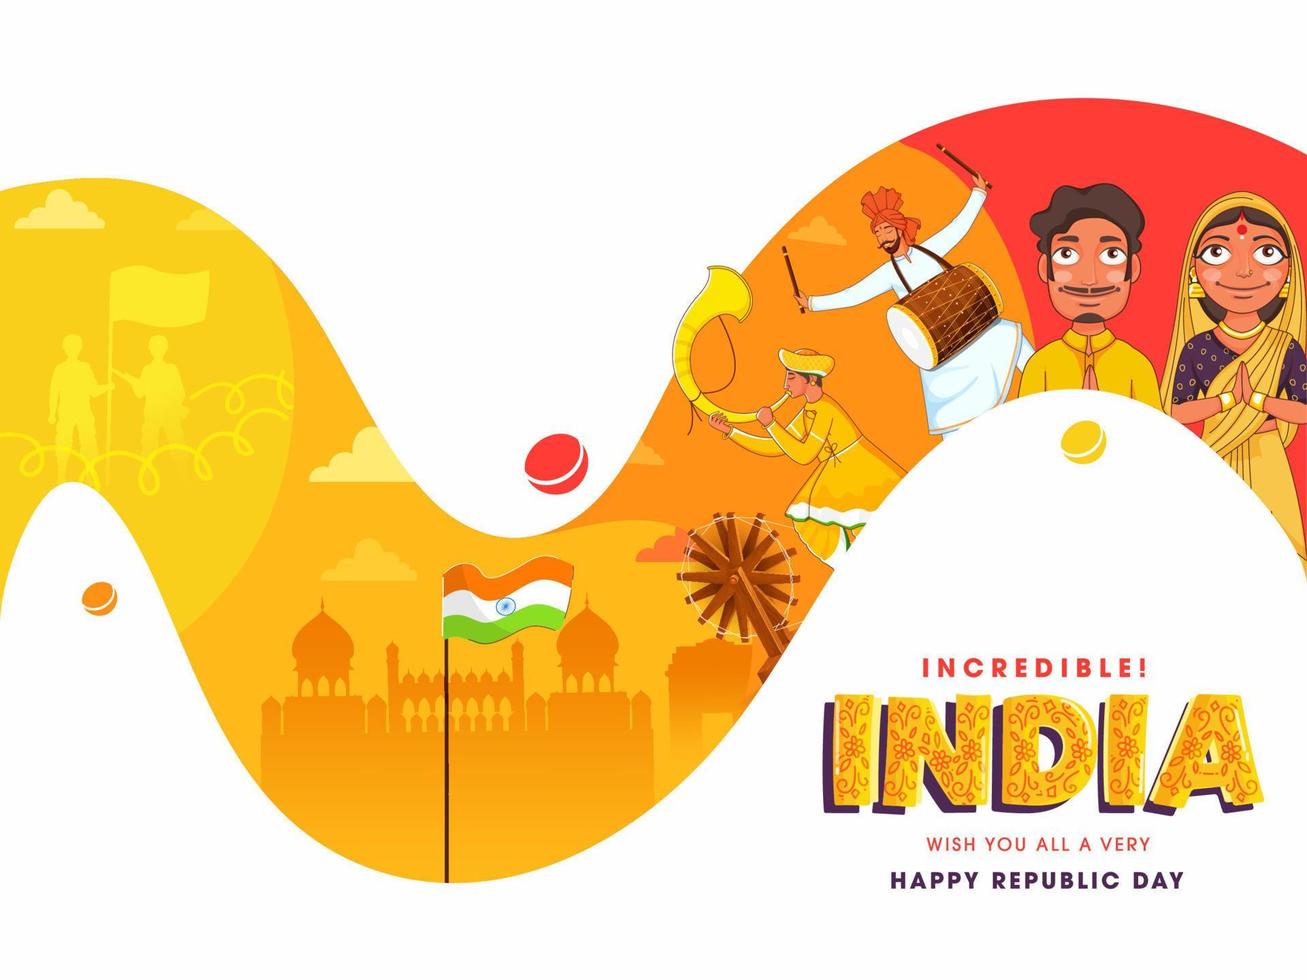 zeigen unglaublich kulturell Vielfalt und Erbe von Indien zum glücklich Republik Tag Feier. vektor